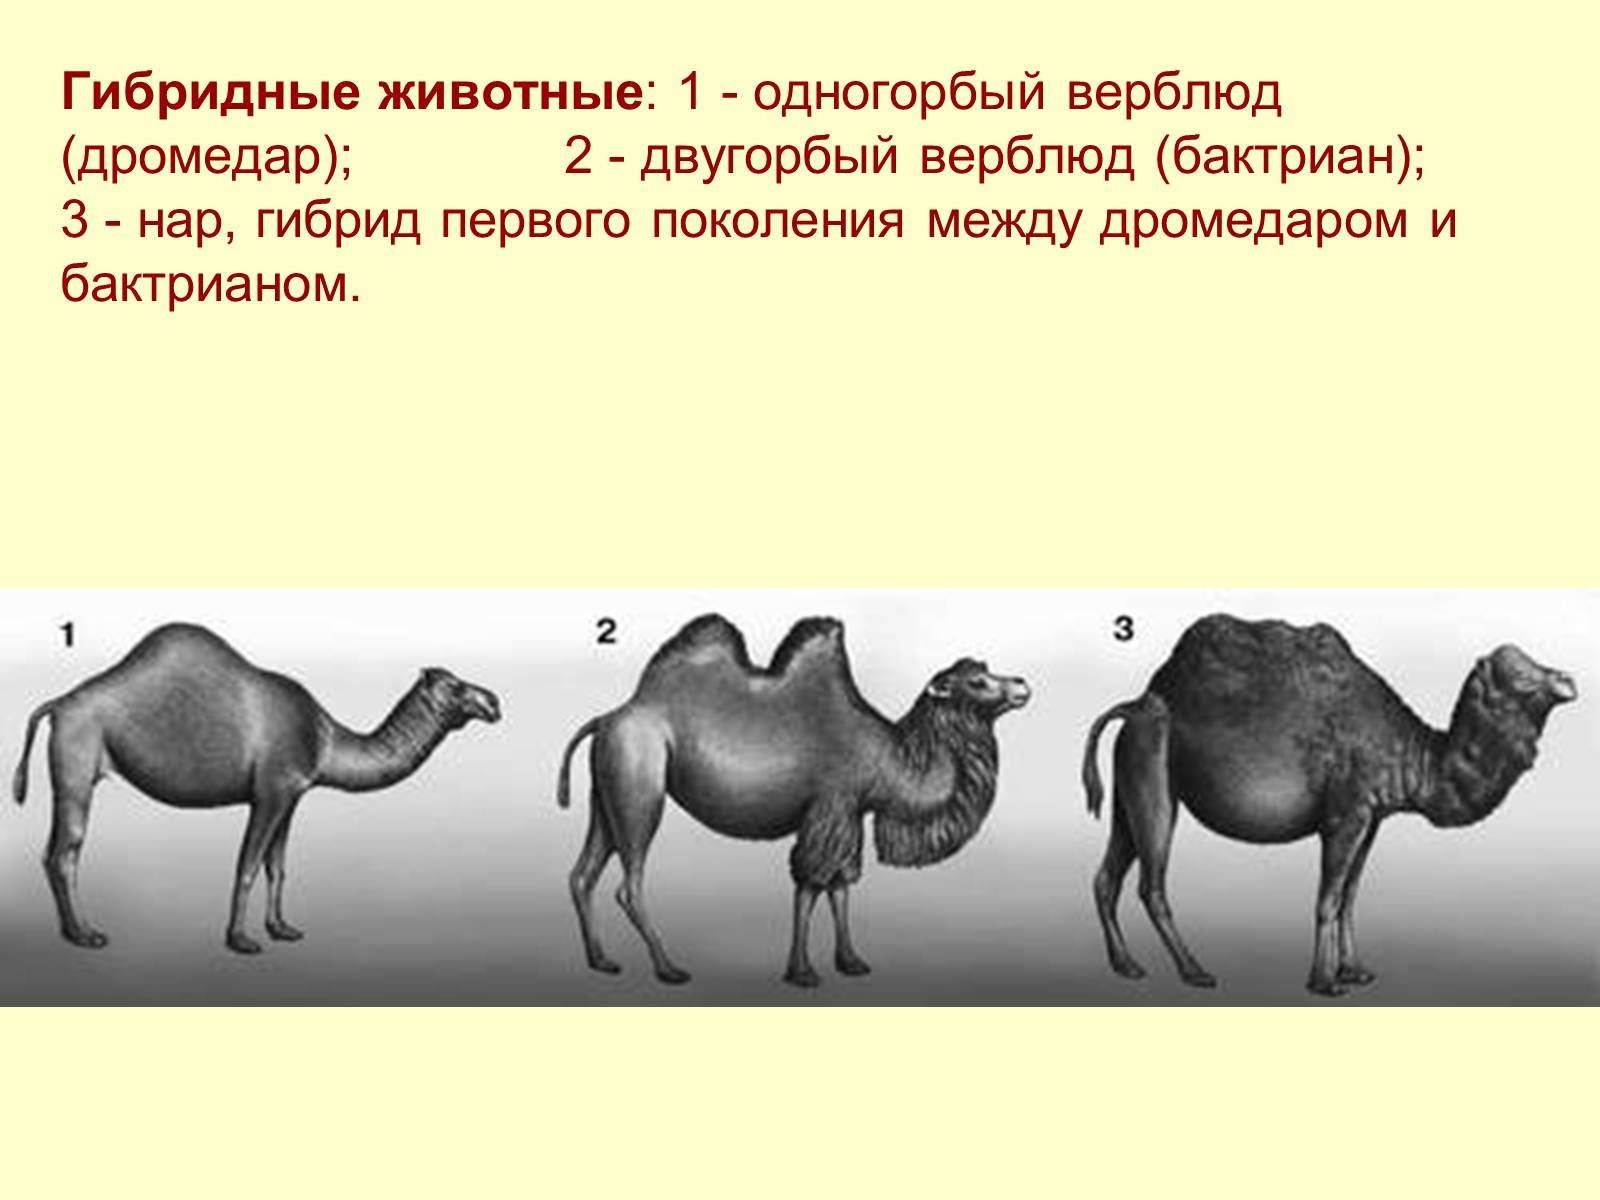 Верблюд двугорбый Туркменистан